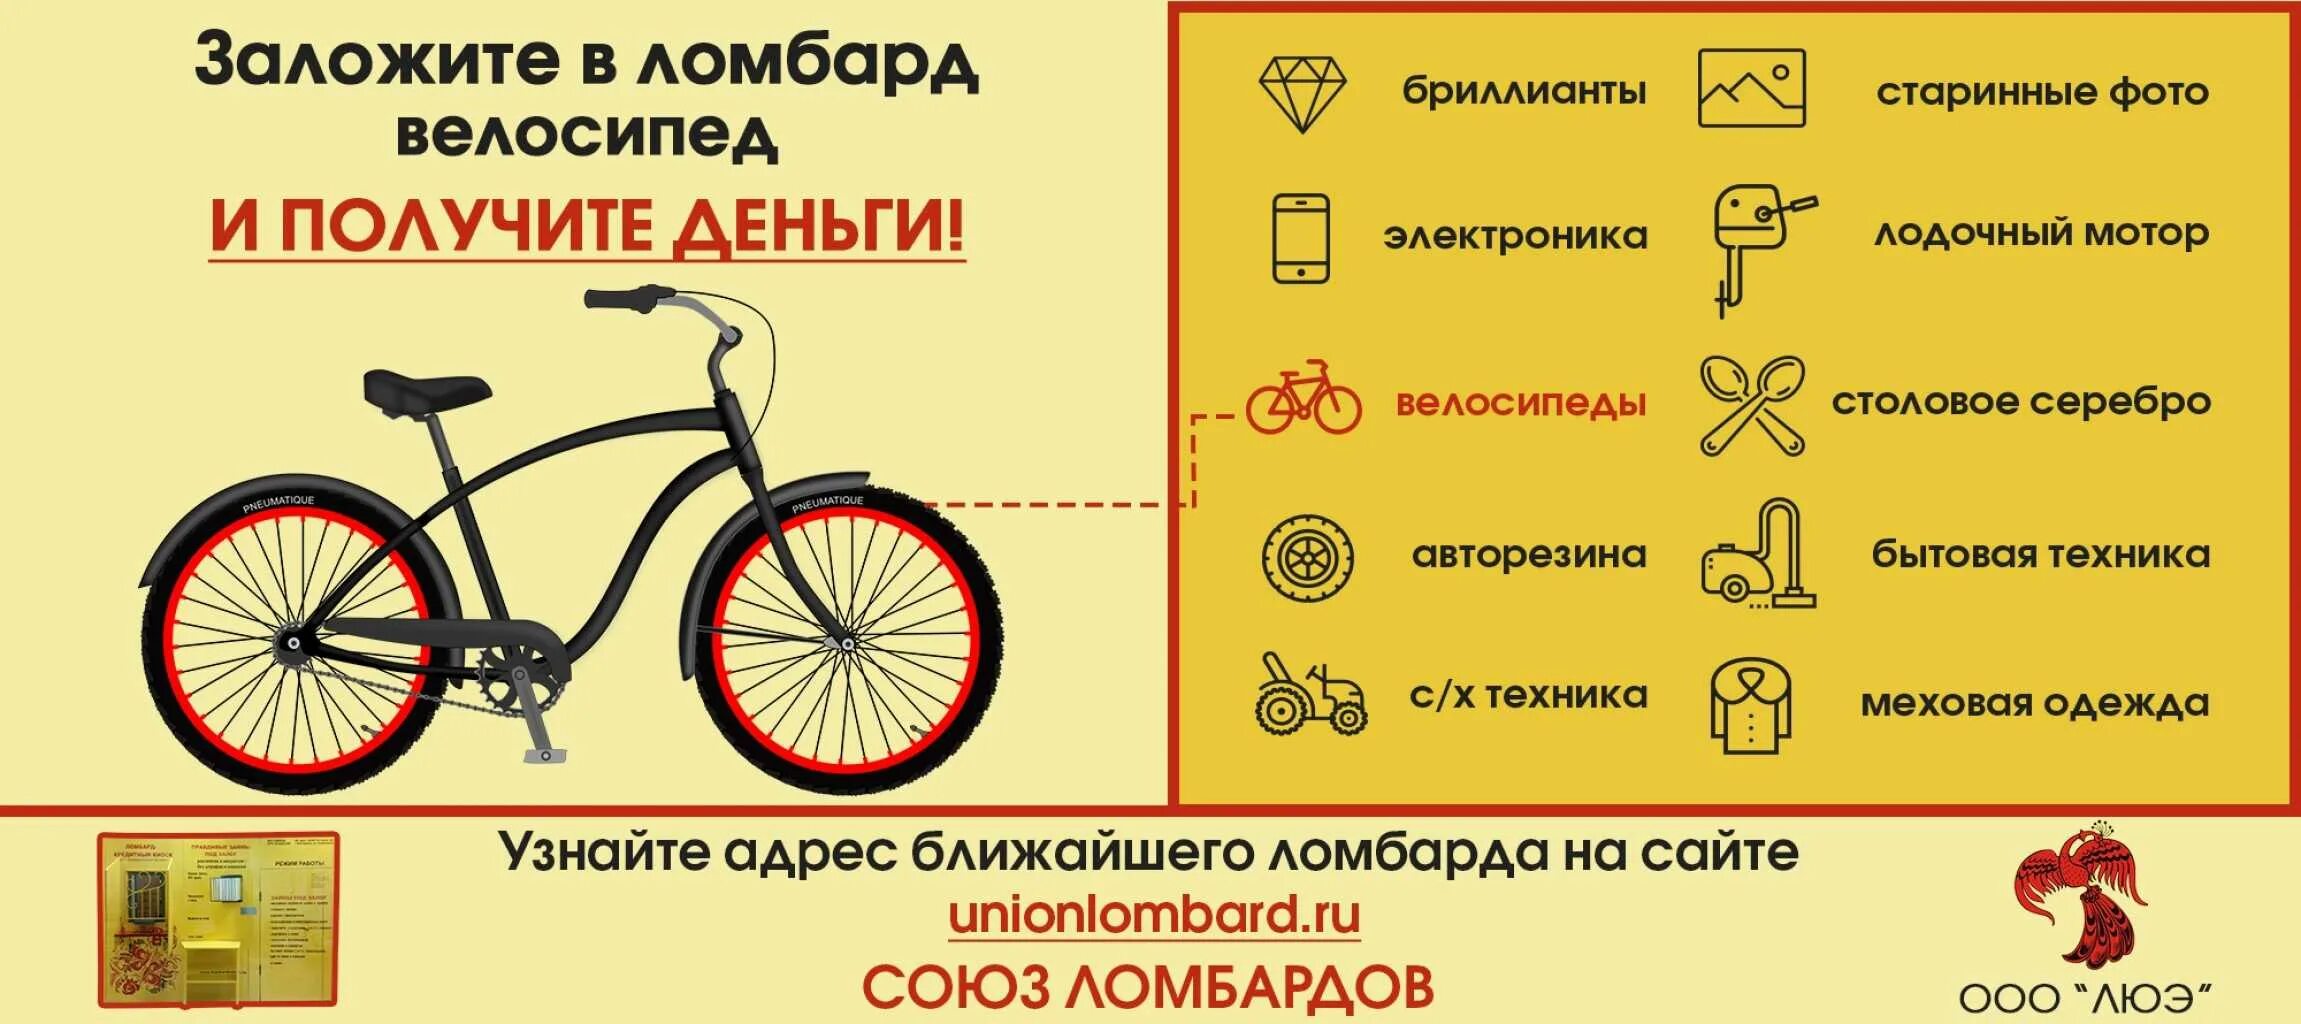 Ломбард велосипед. Объявление о продаже велосипеда. Можно ли сдать велосипед в ломбард. Залог велосипеда.